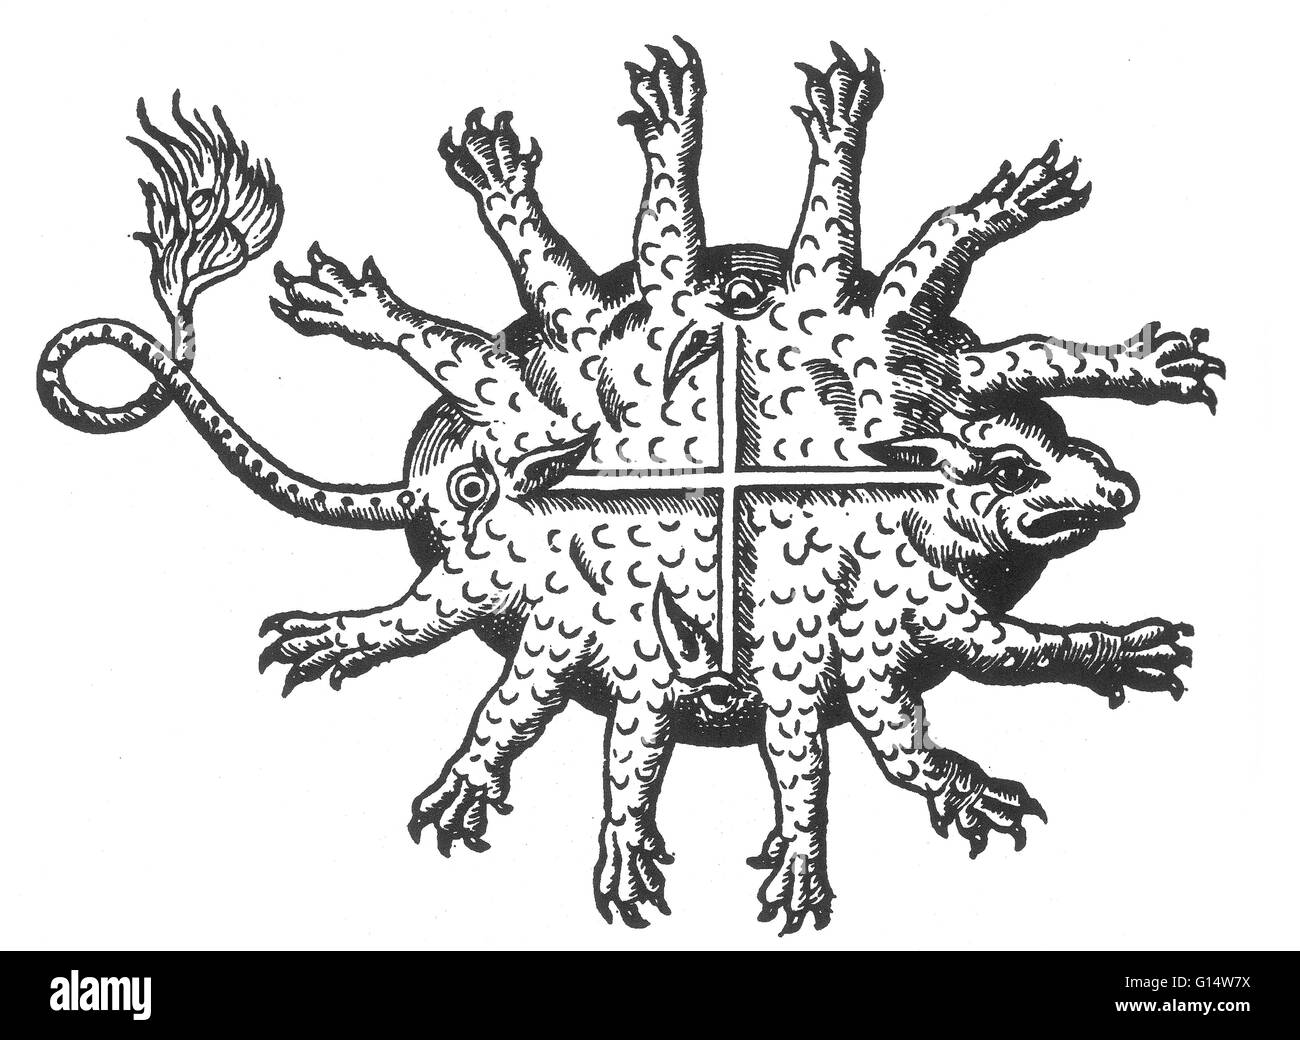 Gravure sur bois d'un monstrueux 'très animal qui est né en Afrique' de des monstres et prodiges d'Ambroise Paré, 1573. Des monstres est rempli avec des comptes du sea devils, truies, marine et d'animaux monstrueux avec des visages humains. Fort de son d Banque D'Images